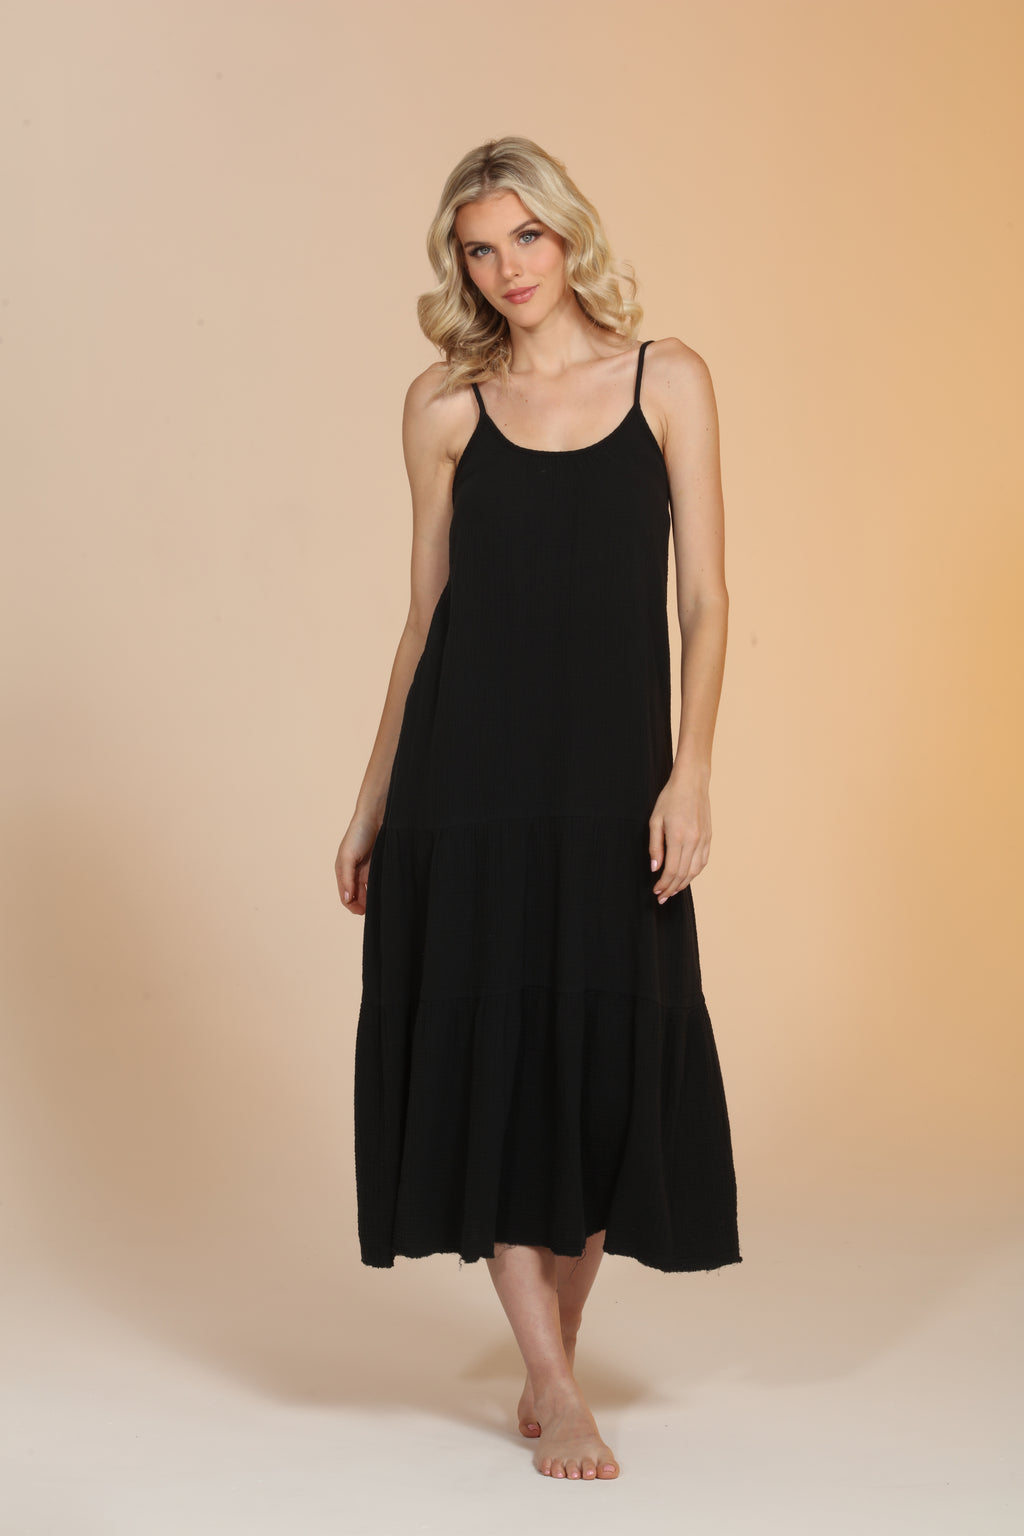 Gauze Flowy Dress - Black